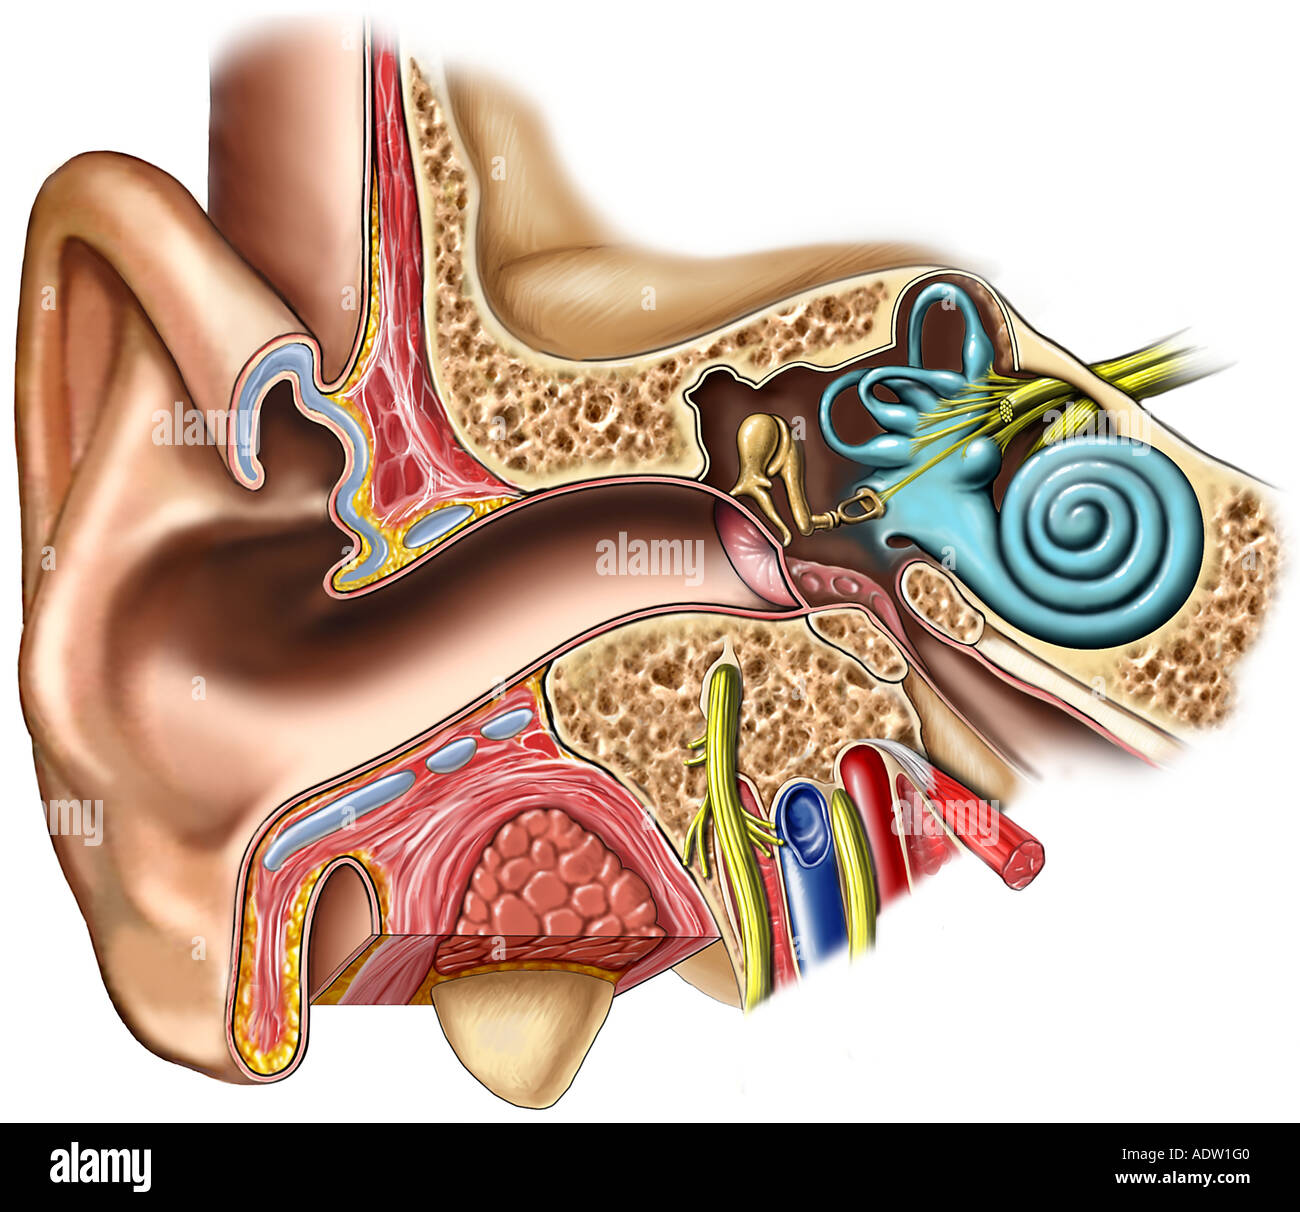 Поражение слухового нерва